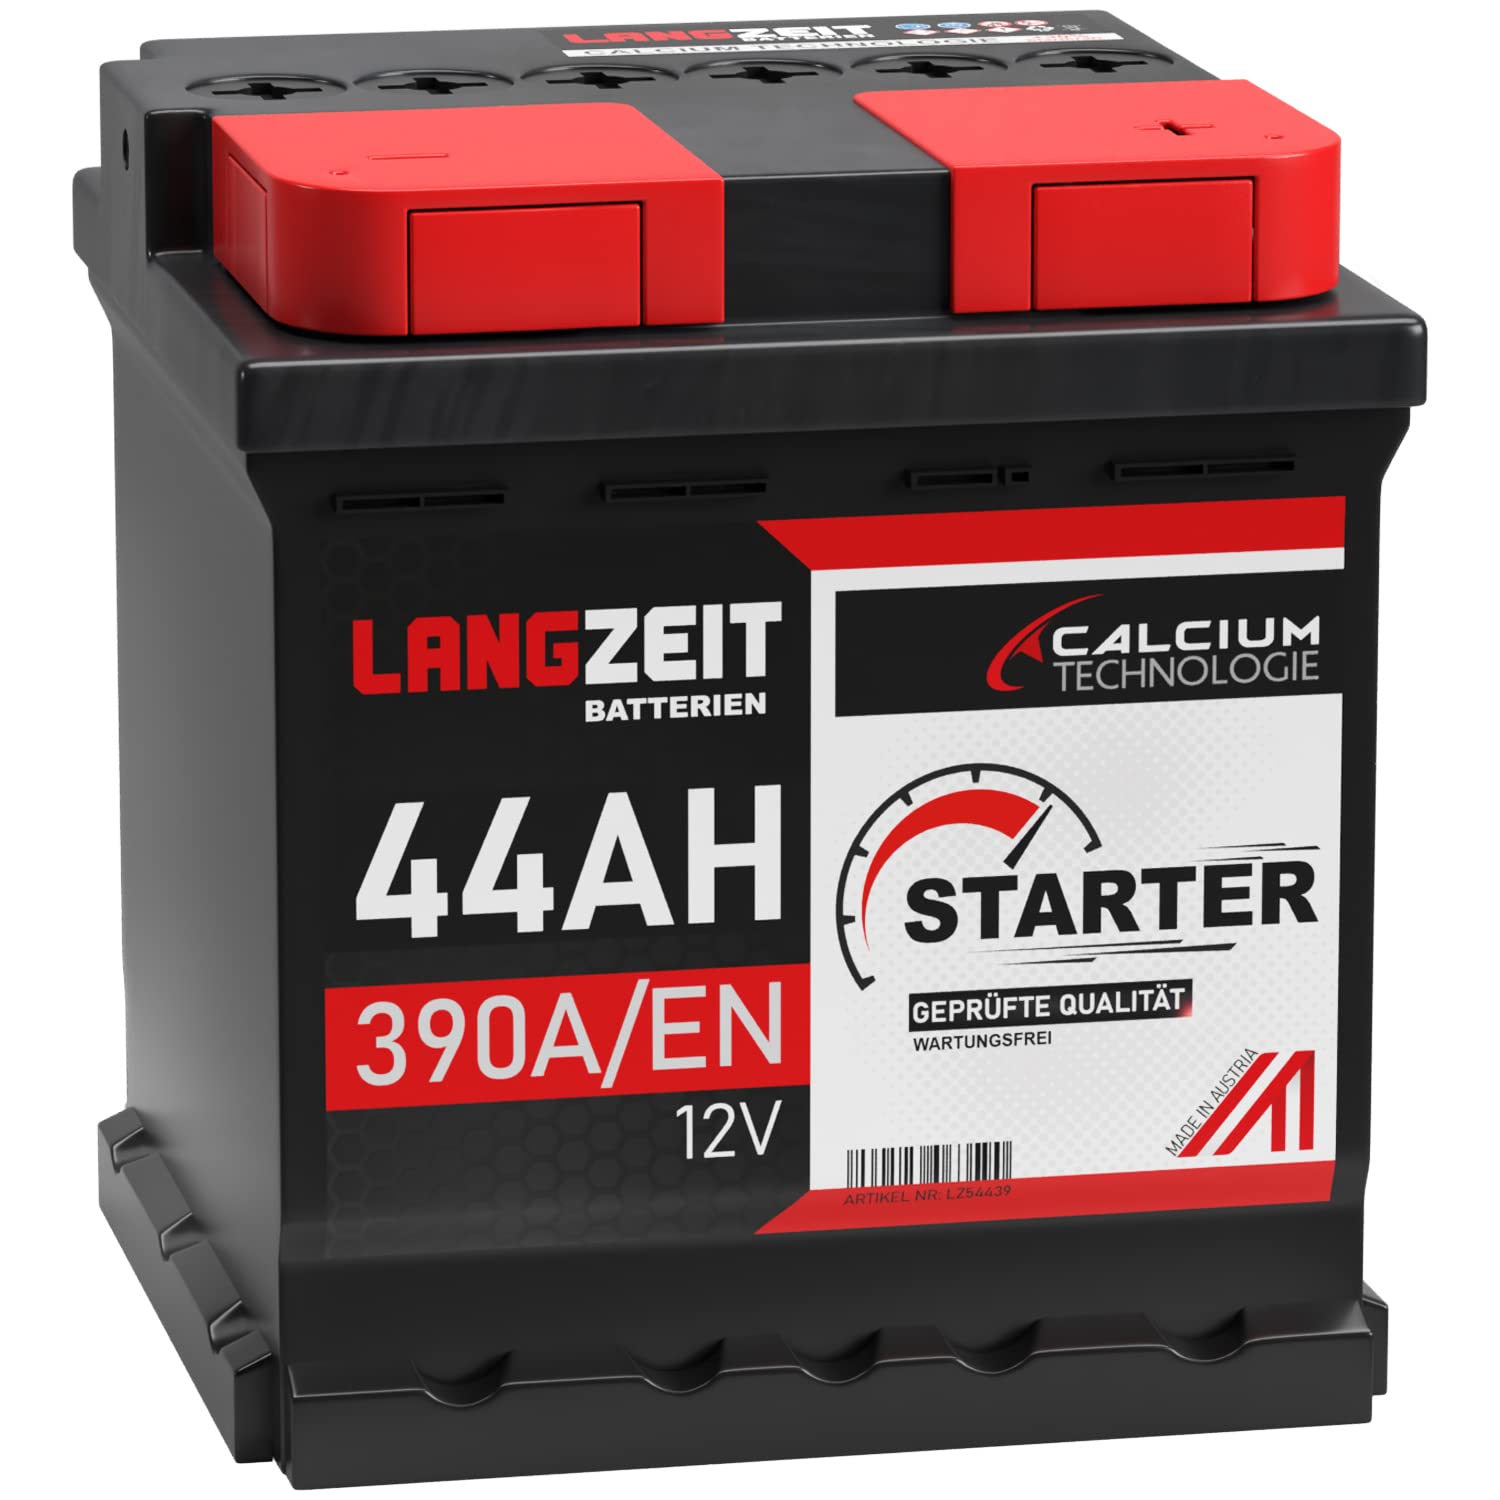 LANGZEIT Autobatterie 44AH 12V 390A/EN Starterbatterie ersetzt Batterie 36Ah 38Ah 40Ah 42Ah 45Ah